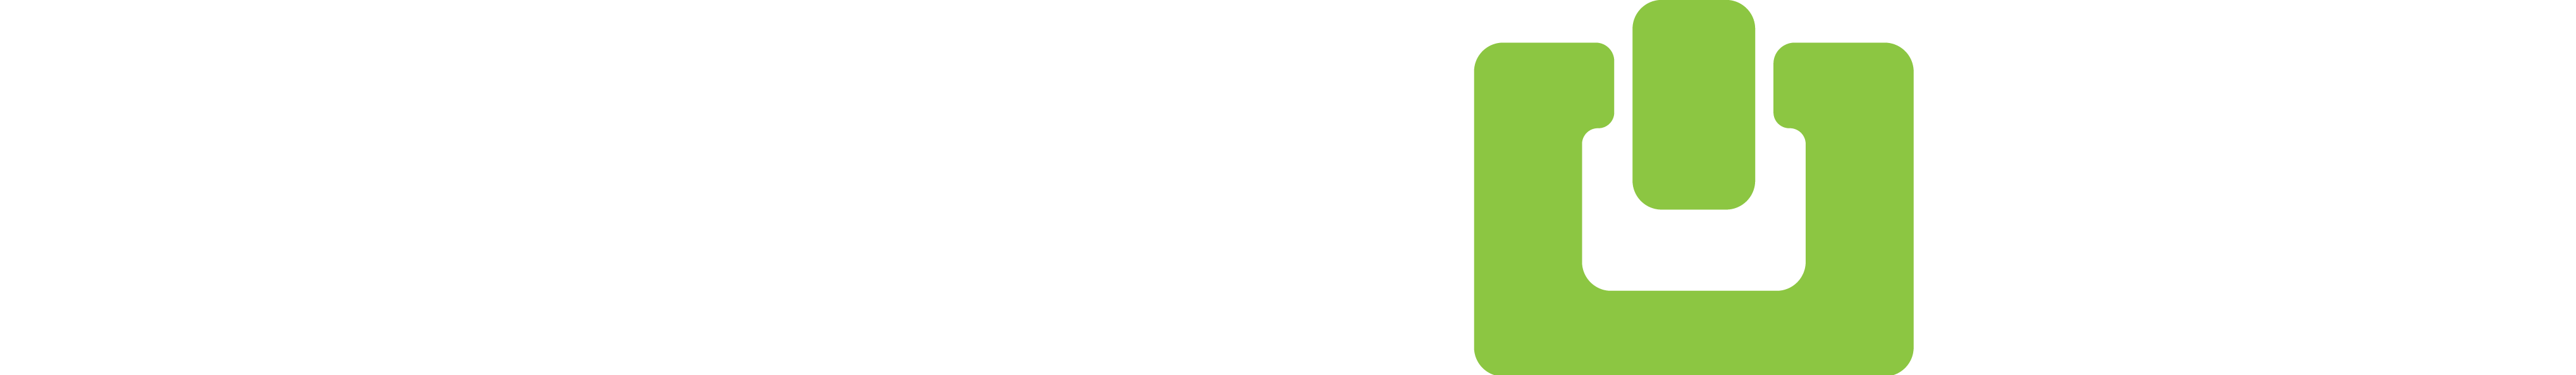 TECOBI White and Green Logo